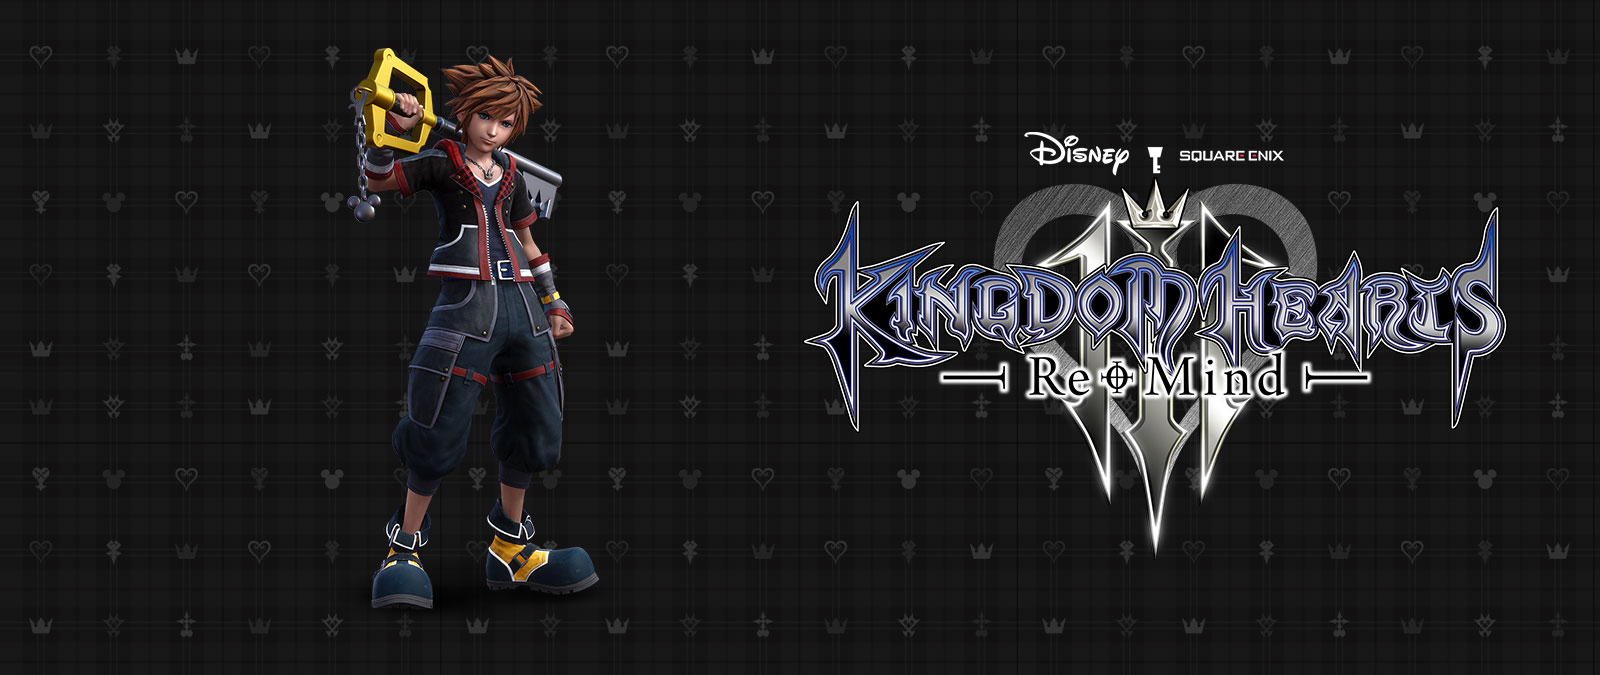 Disney Kingdom Hearts 3, Re-Mind, Sora debout avec un arrière-plan noir avec le Keyblade sur son épaule. 